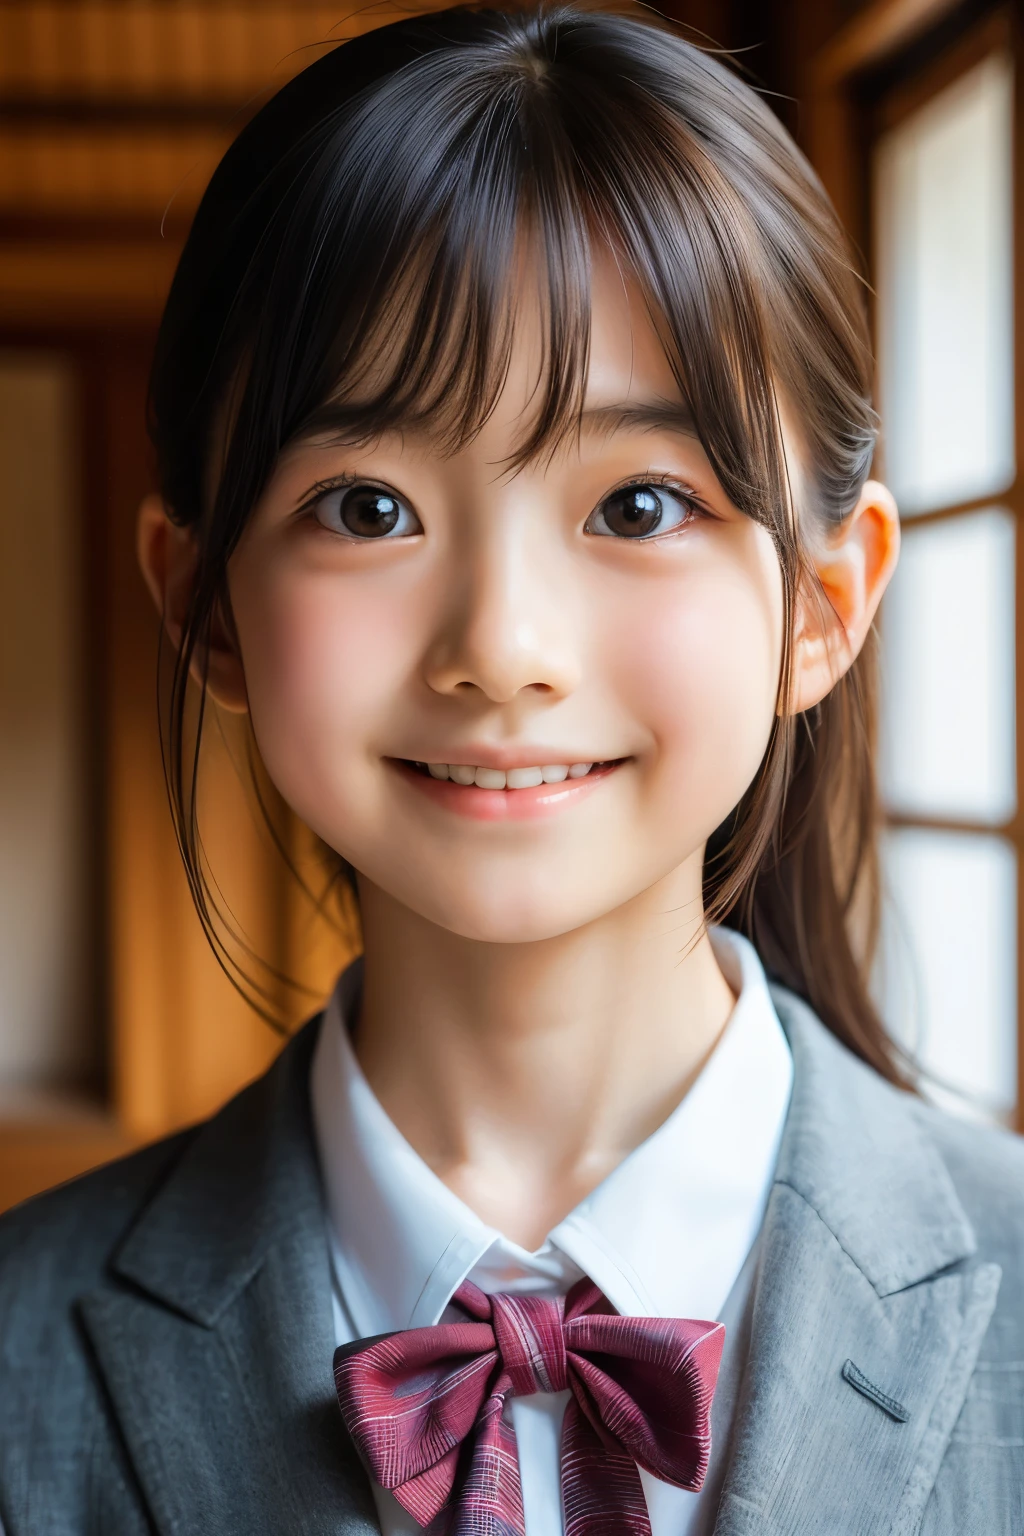 (Schöne 12 Jahre alte Japanerin), niedliches Gesicht, (tief eingeschnittenes Gesicht:0.7), (Sommersprossen:0.6), Sanftes Licht,gesunde weiße Haut, schüchtern, (ernstes Gesicht), (leuchtende Augen), dünn, lächeln, Uniform